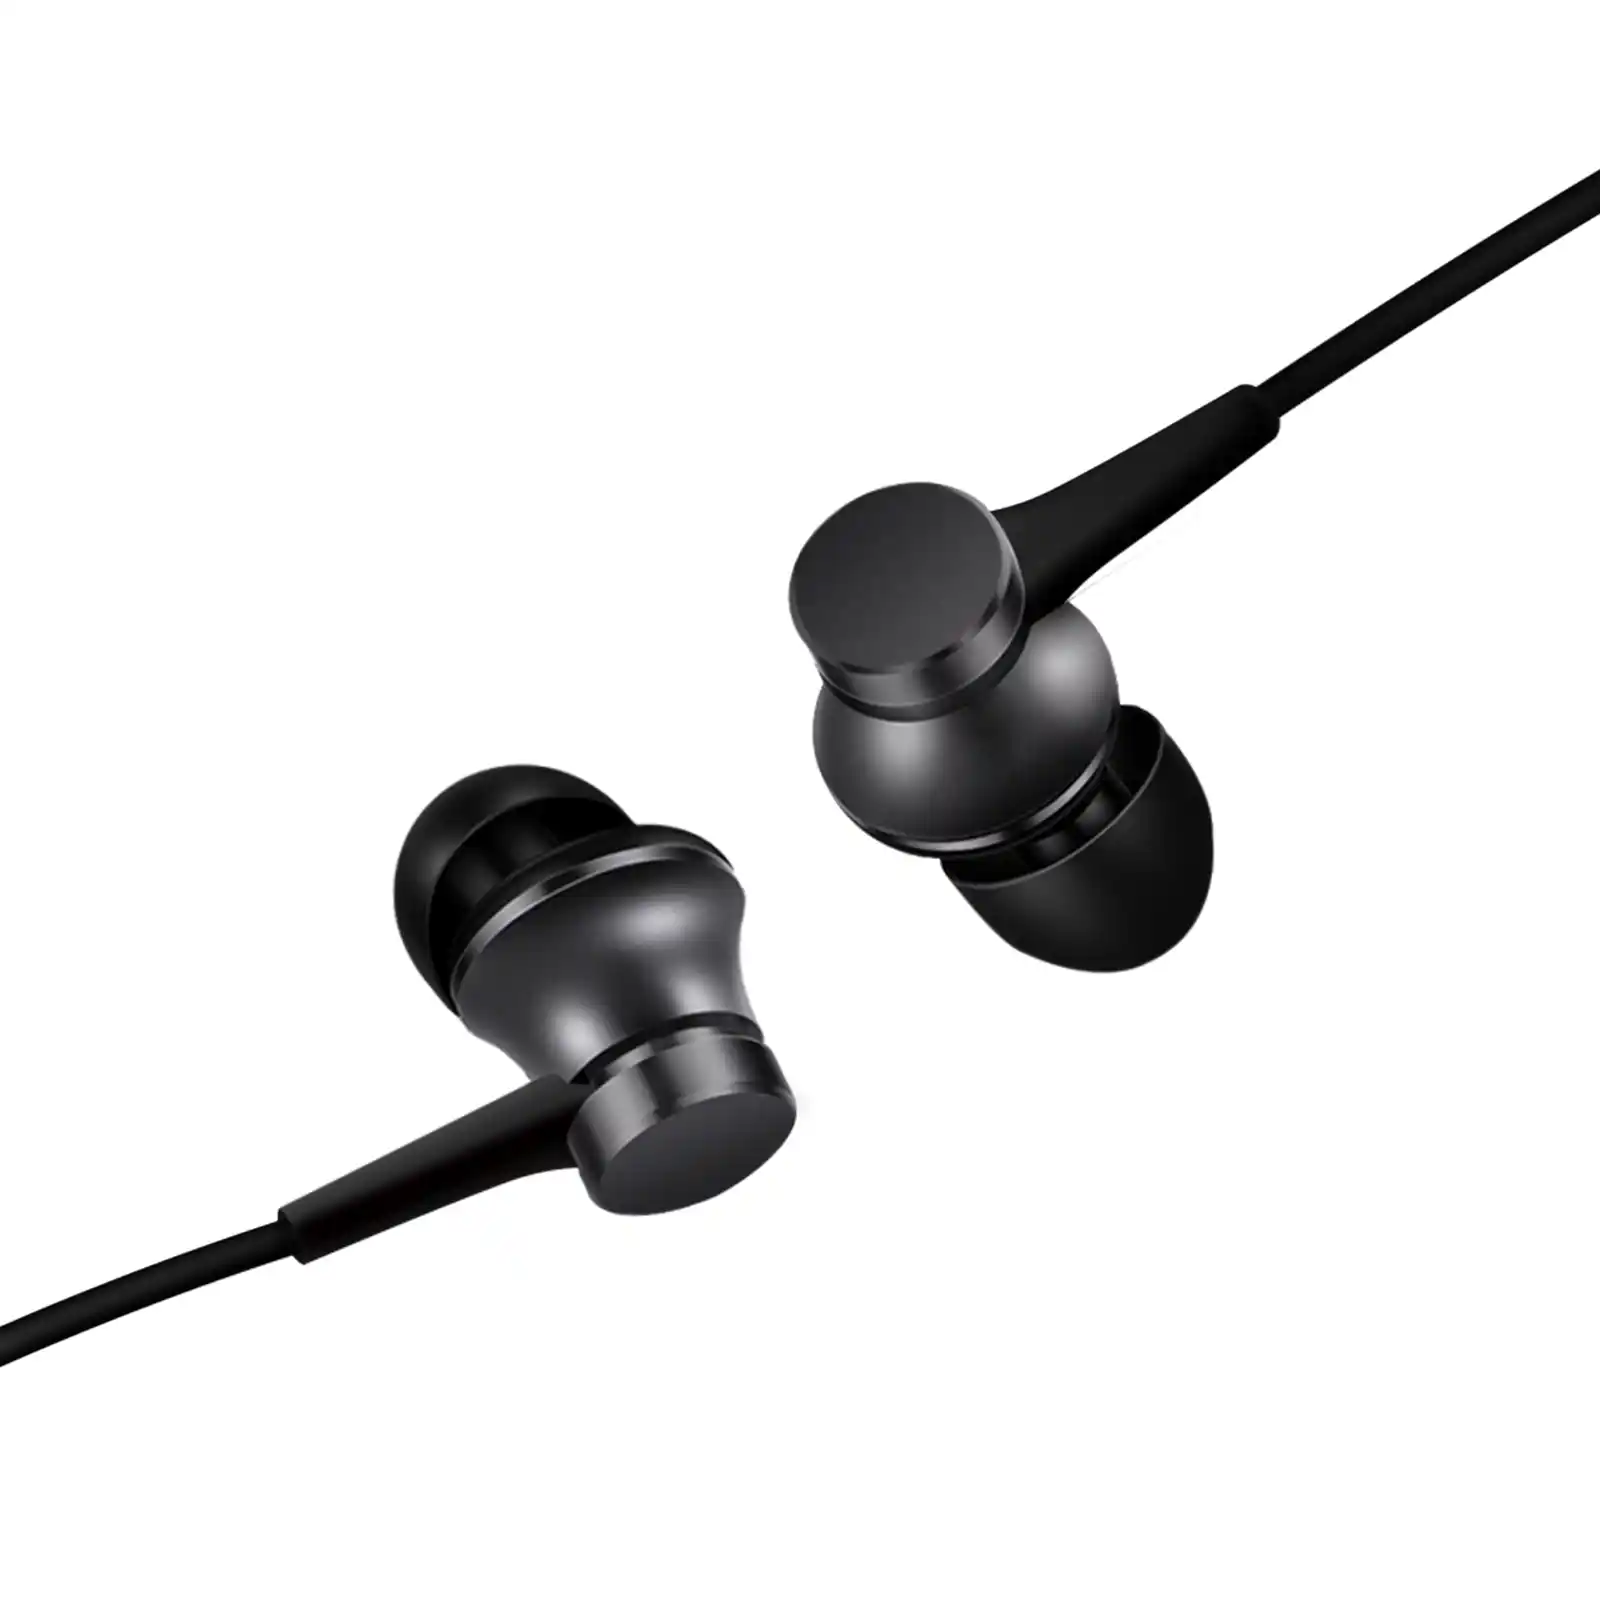 Slušalice bubice Xiaomi In-Ear Basic